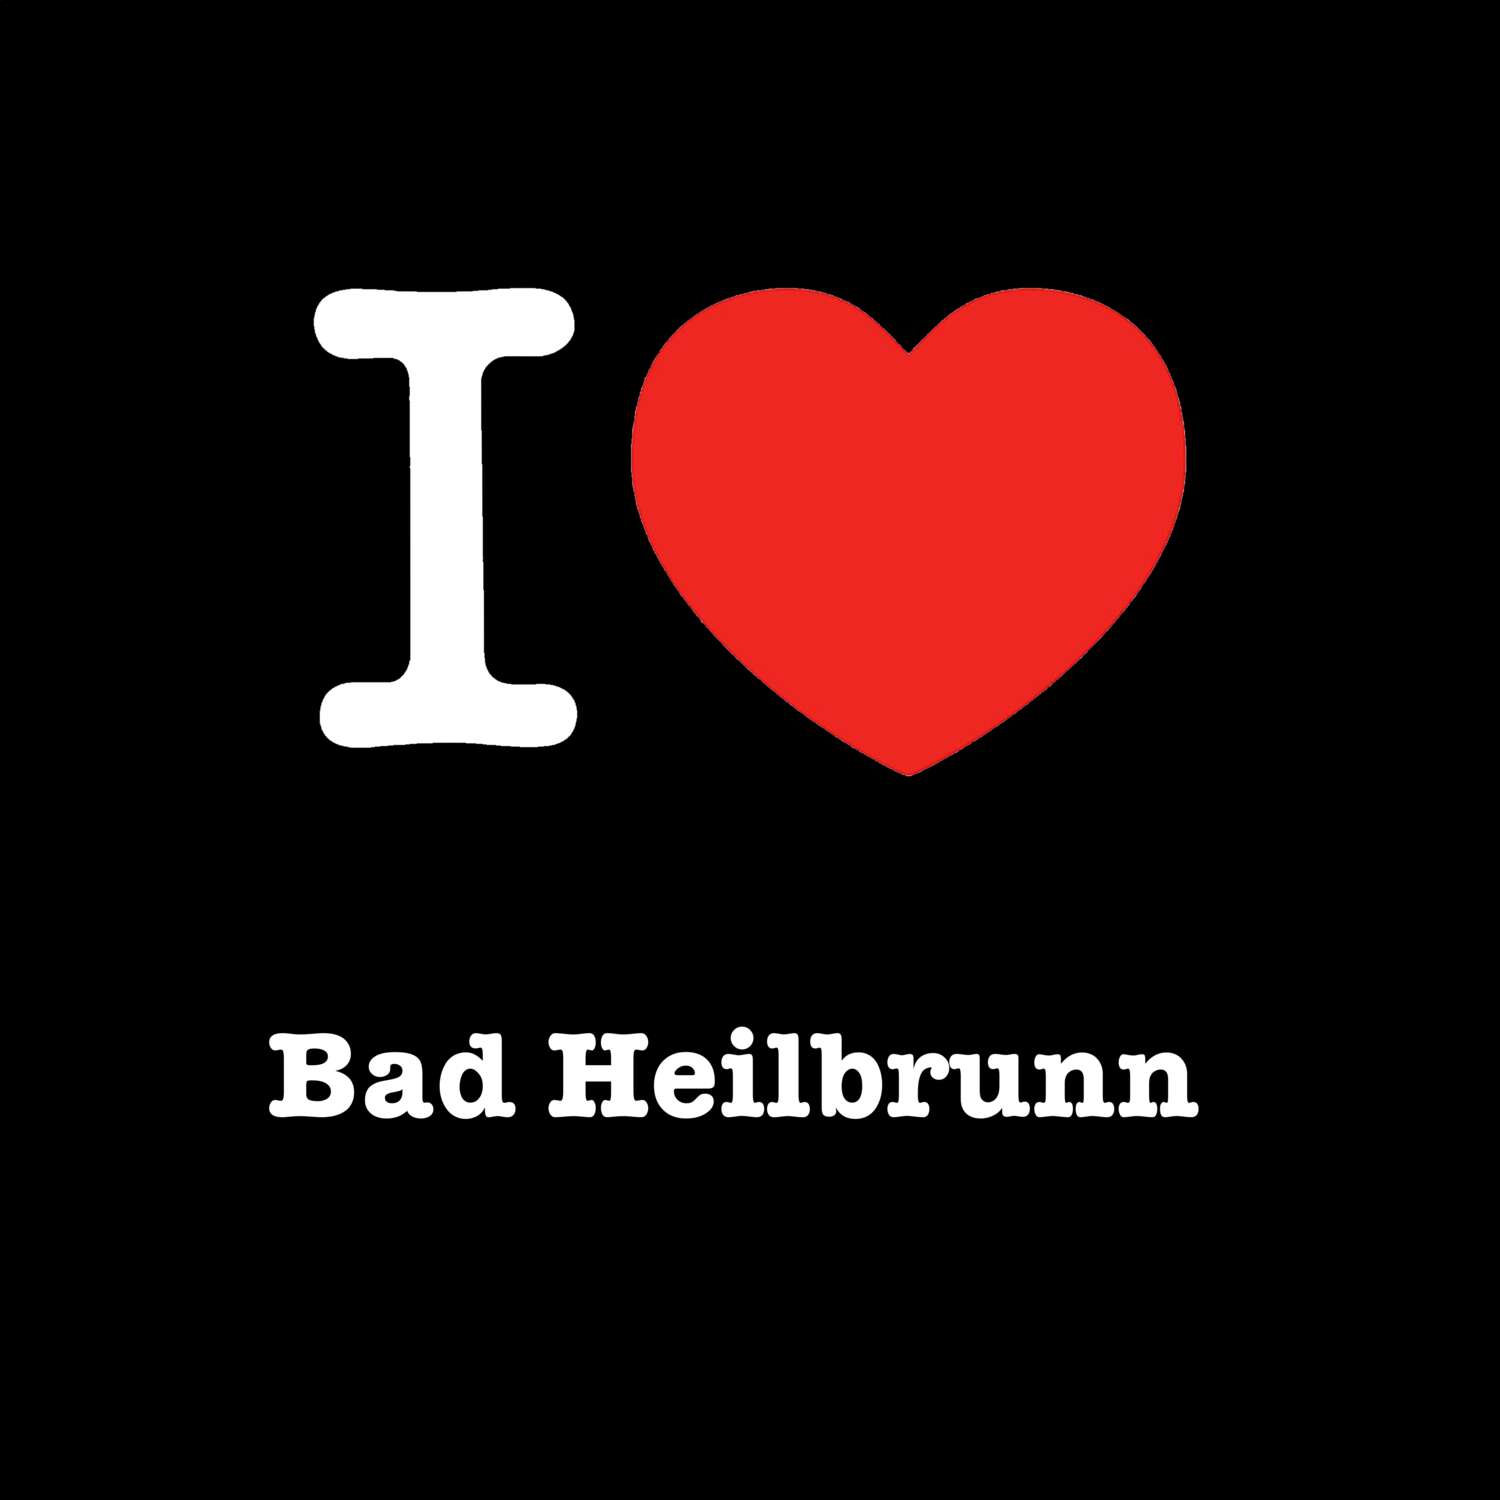 Bad Heilbrunn T-Shirt »I love«